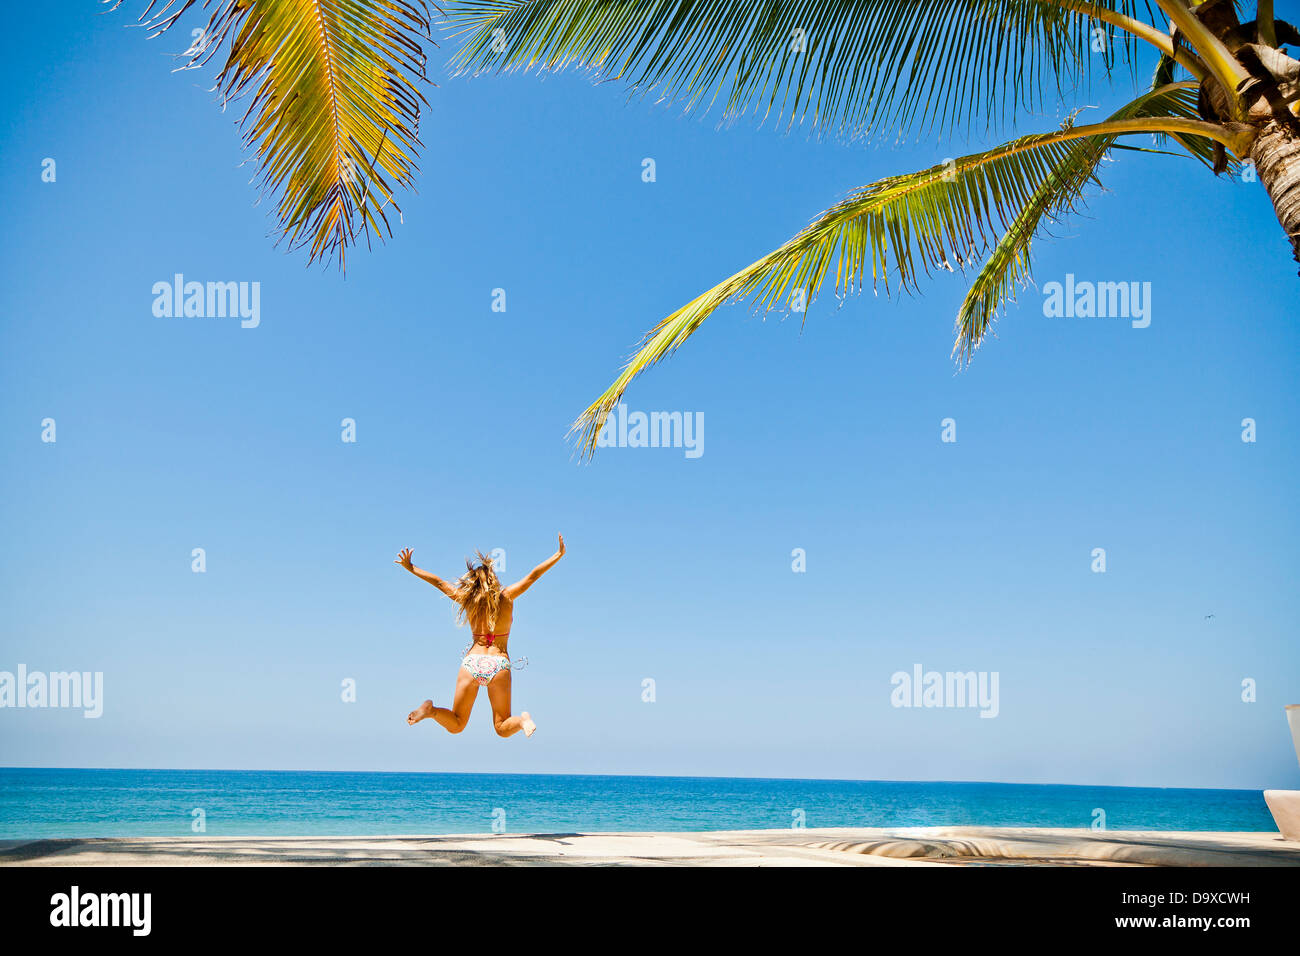 Woman in bikini jumping on beach Stock Photo